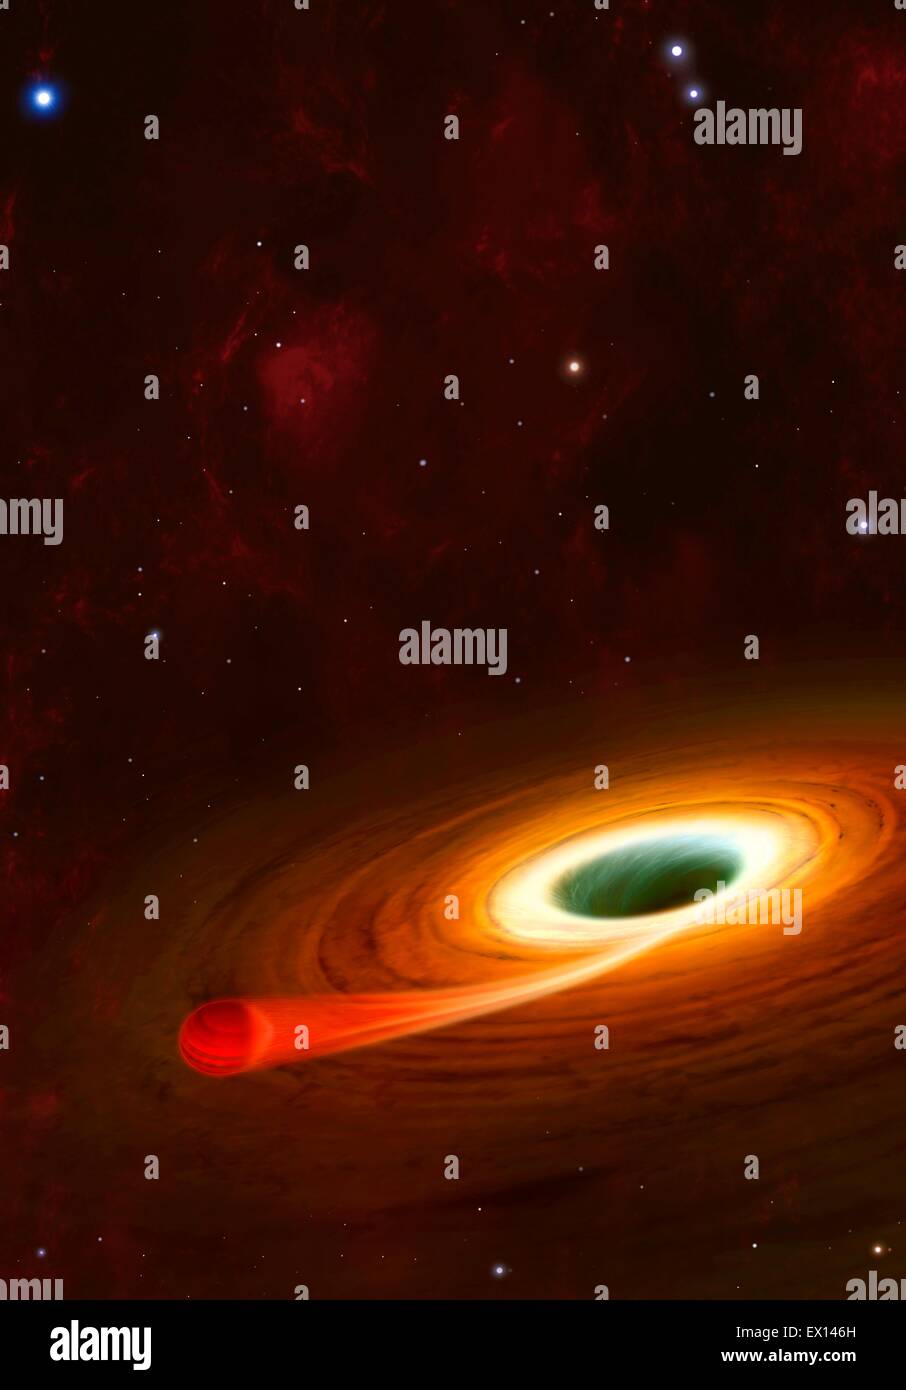 Die folgende Abbildung zeigt ein supermassives schwarzes Loch in den Prozess der verschlingt eines nahe gelegenen gasförmigen Planeten Supermassive Schwarze Löcher Stockfoto